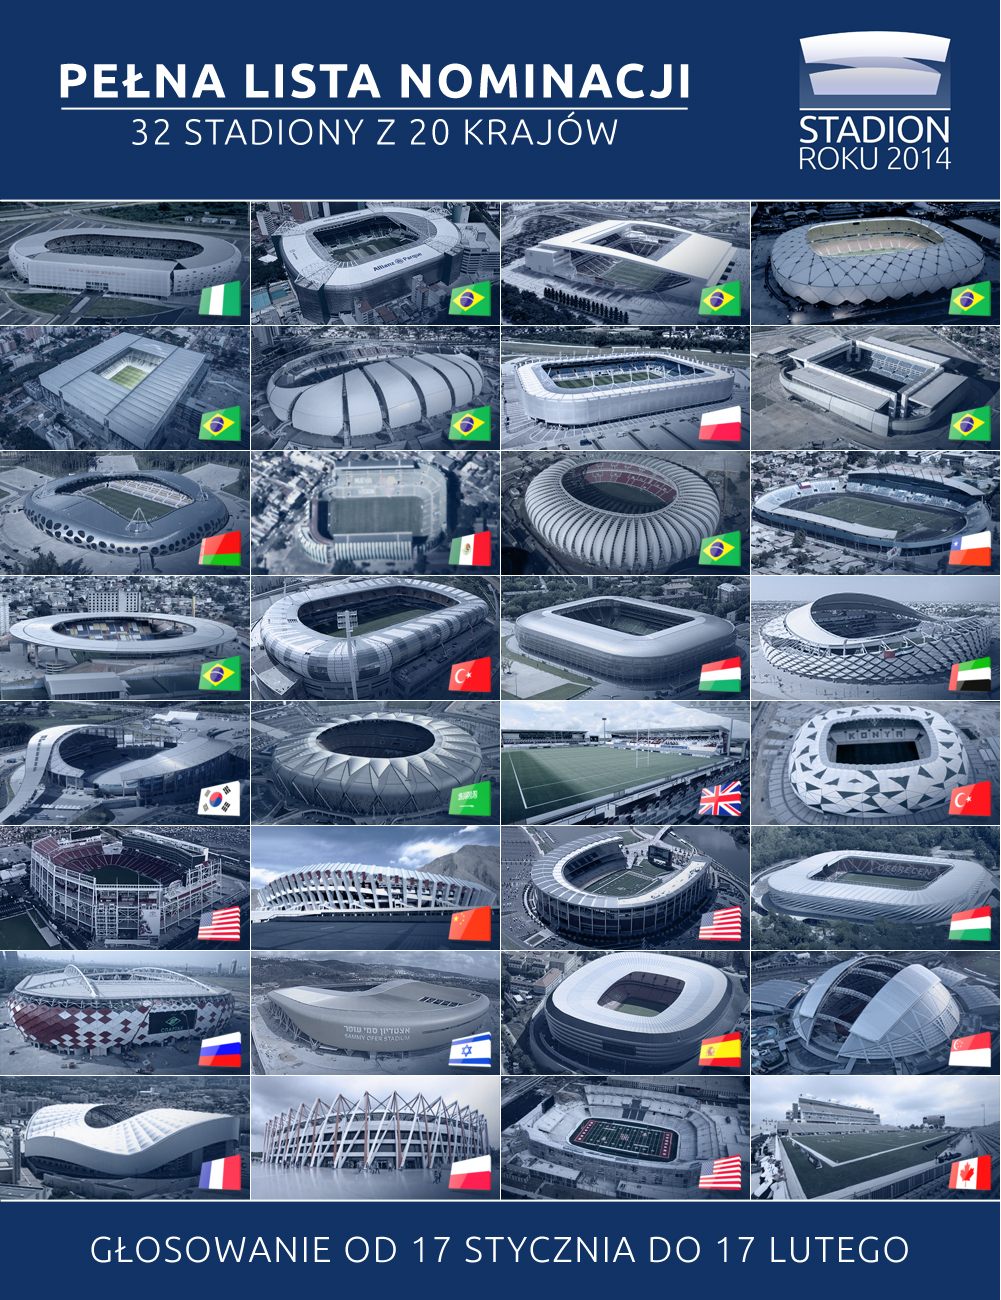 Nominacje - Stadion Roku 2014